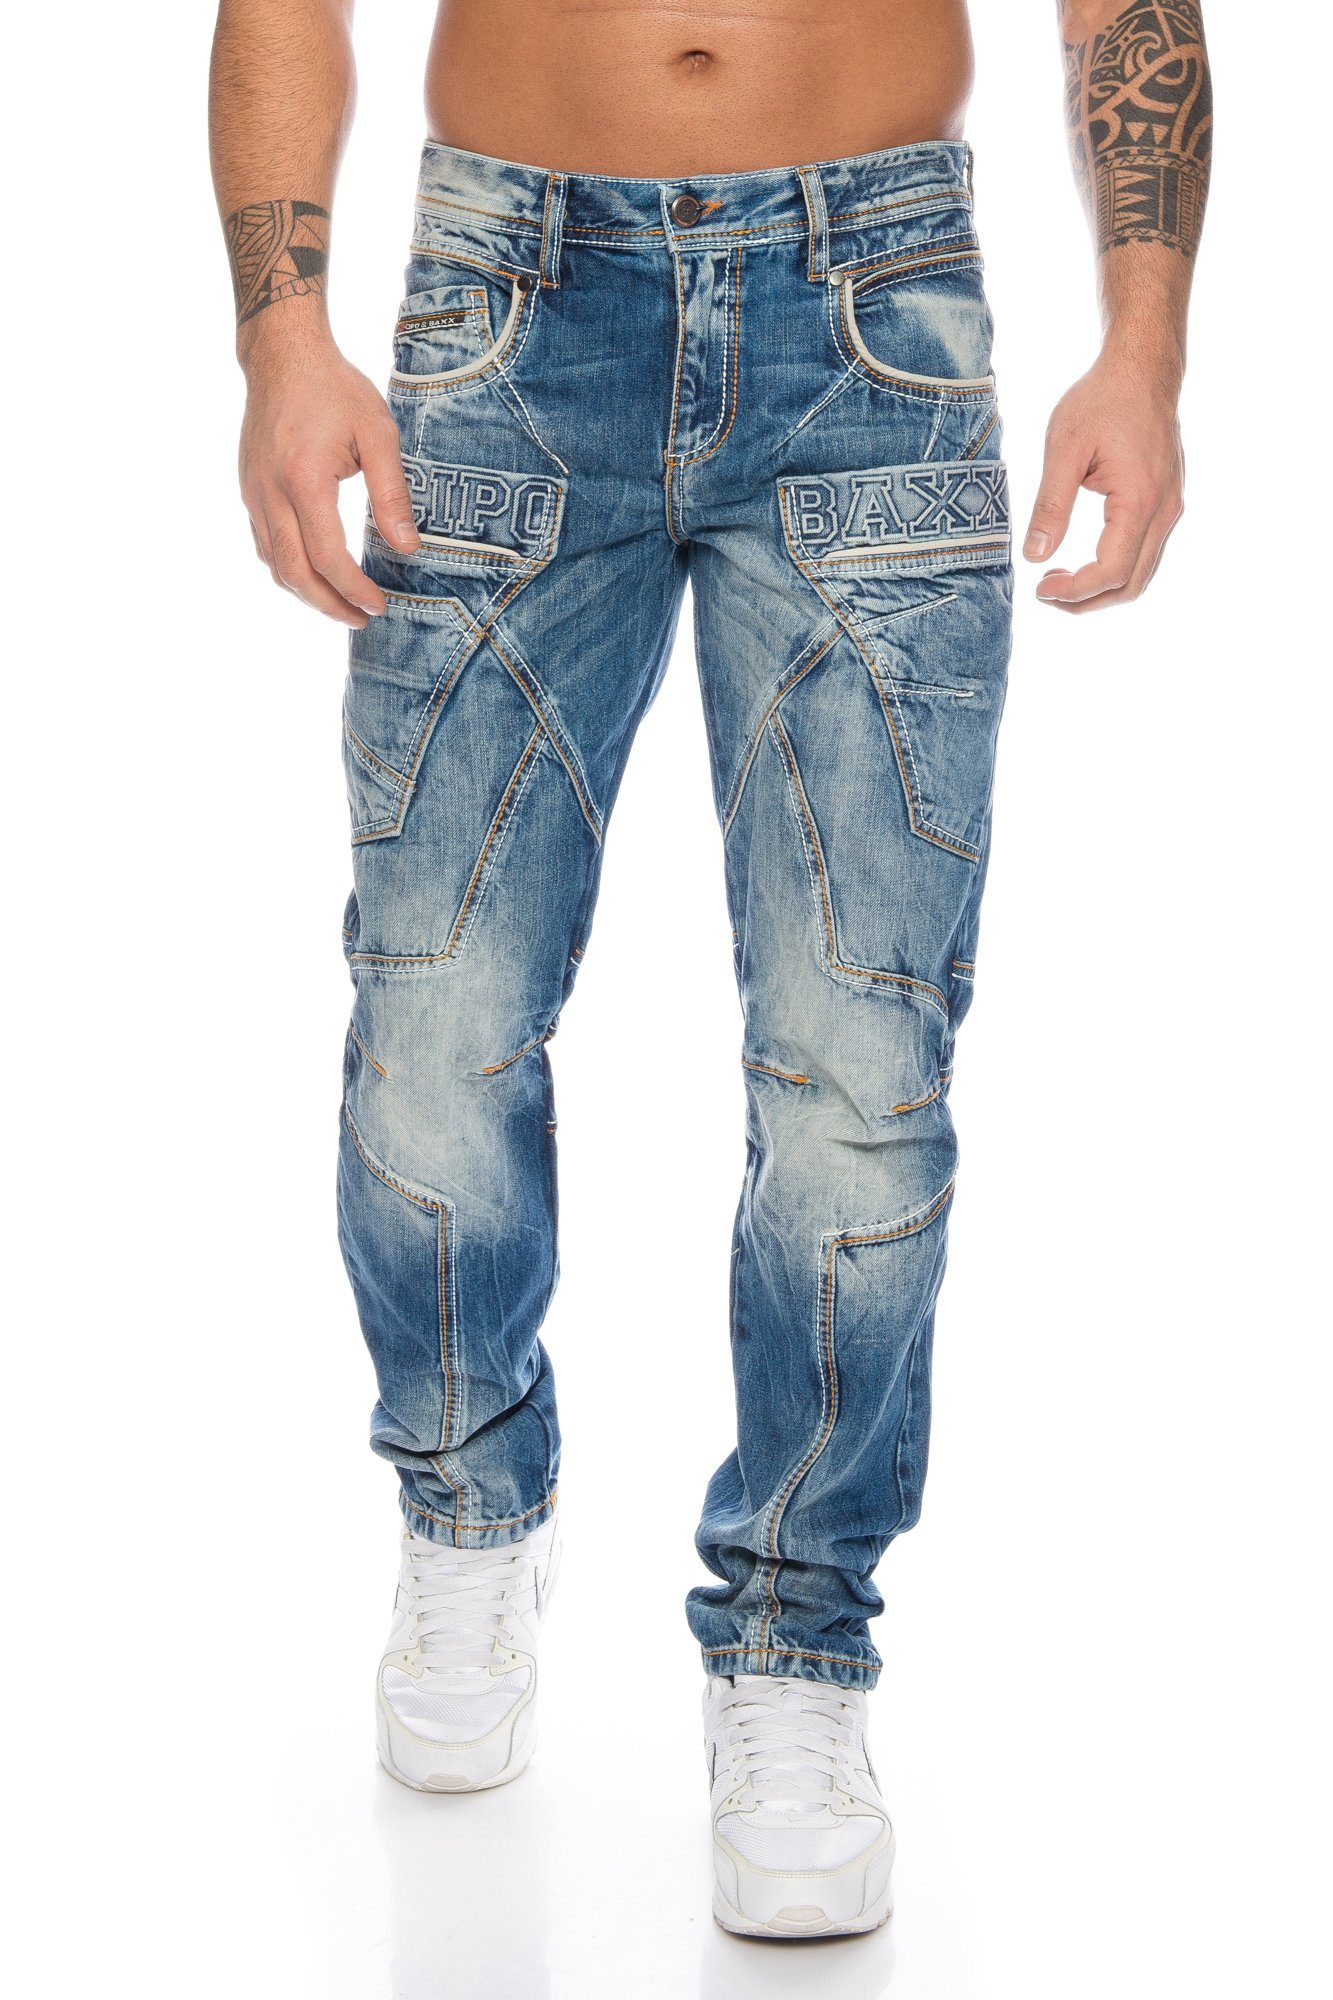 Cipo & Baxx Slim-fit-Jeans »Herren Jeans Hose mit ausgefallenem Labeldesign  und dicken Ziernähten« 3D Labelbranding und dicke Kontrastnähte